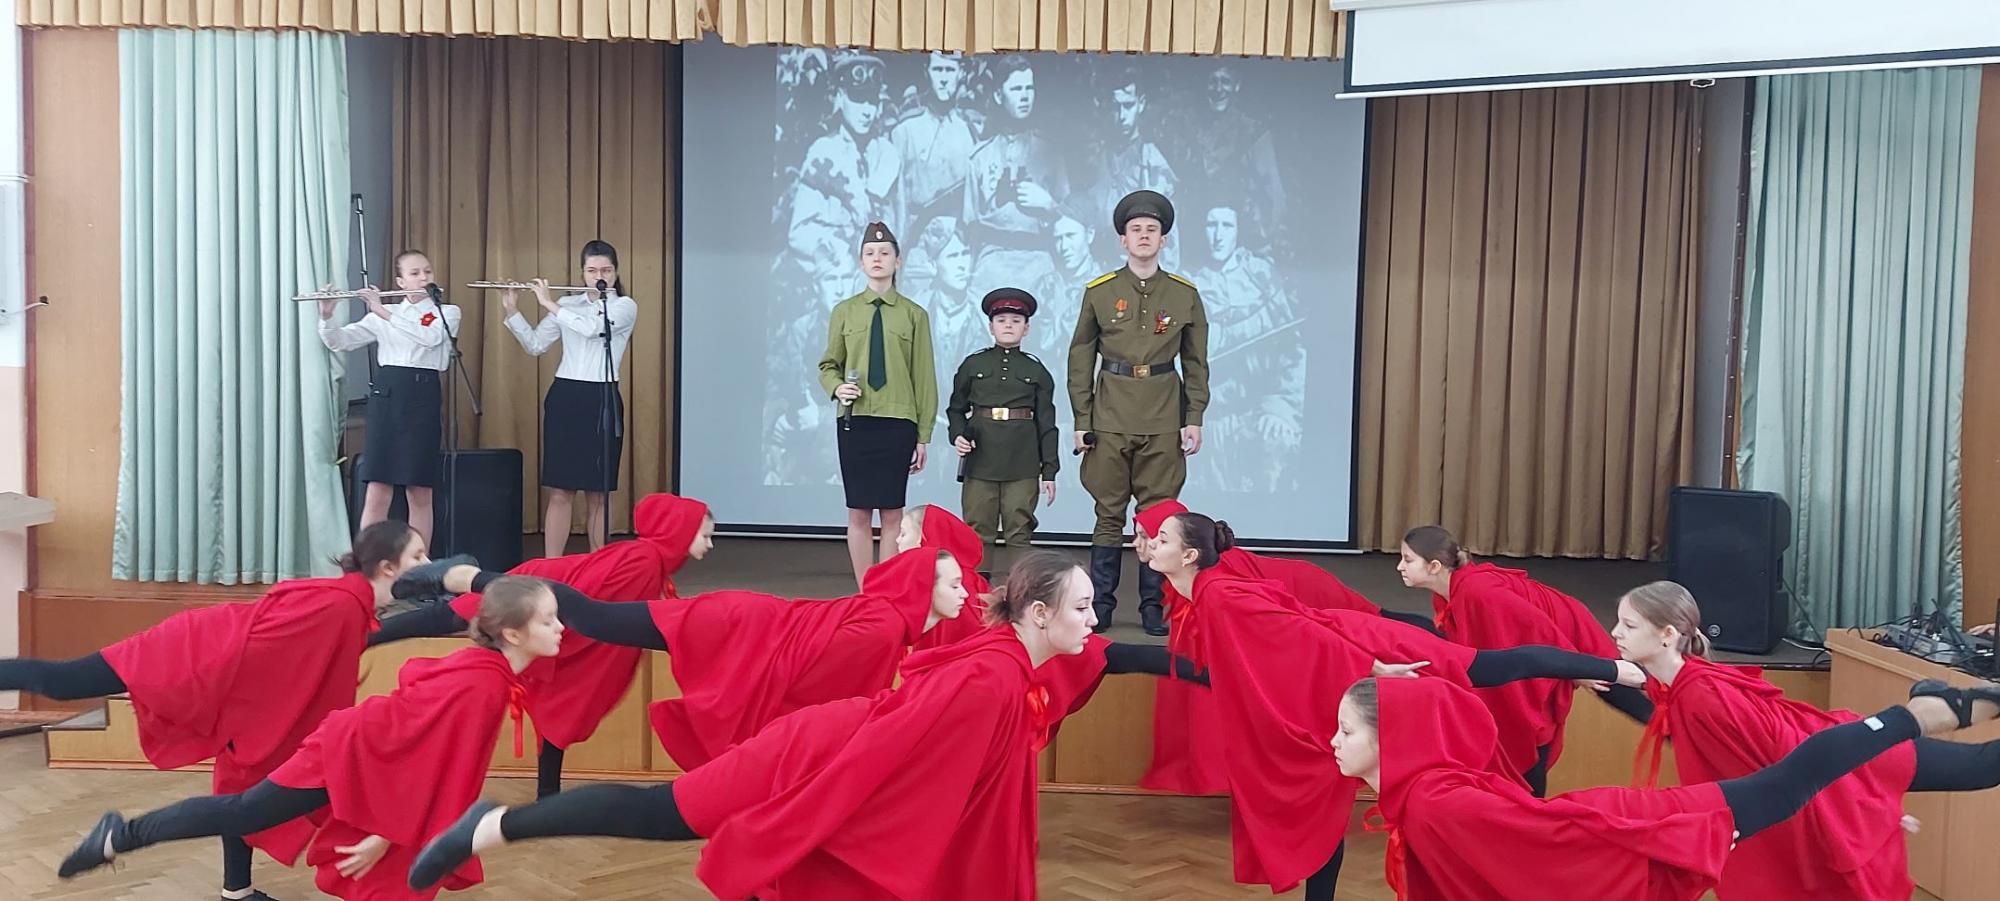 Фестиваль инсценированной военно-патриотической песни "Песня в солдатской шинели".